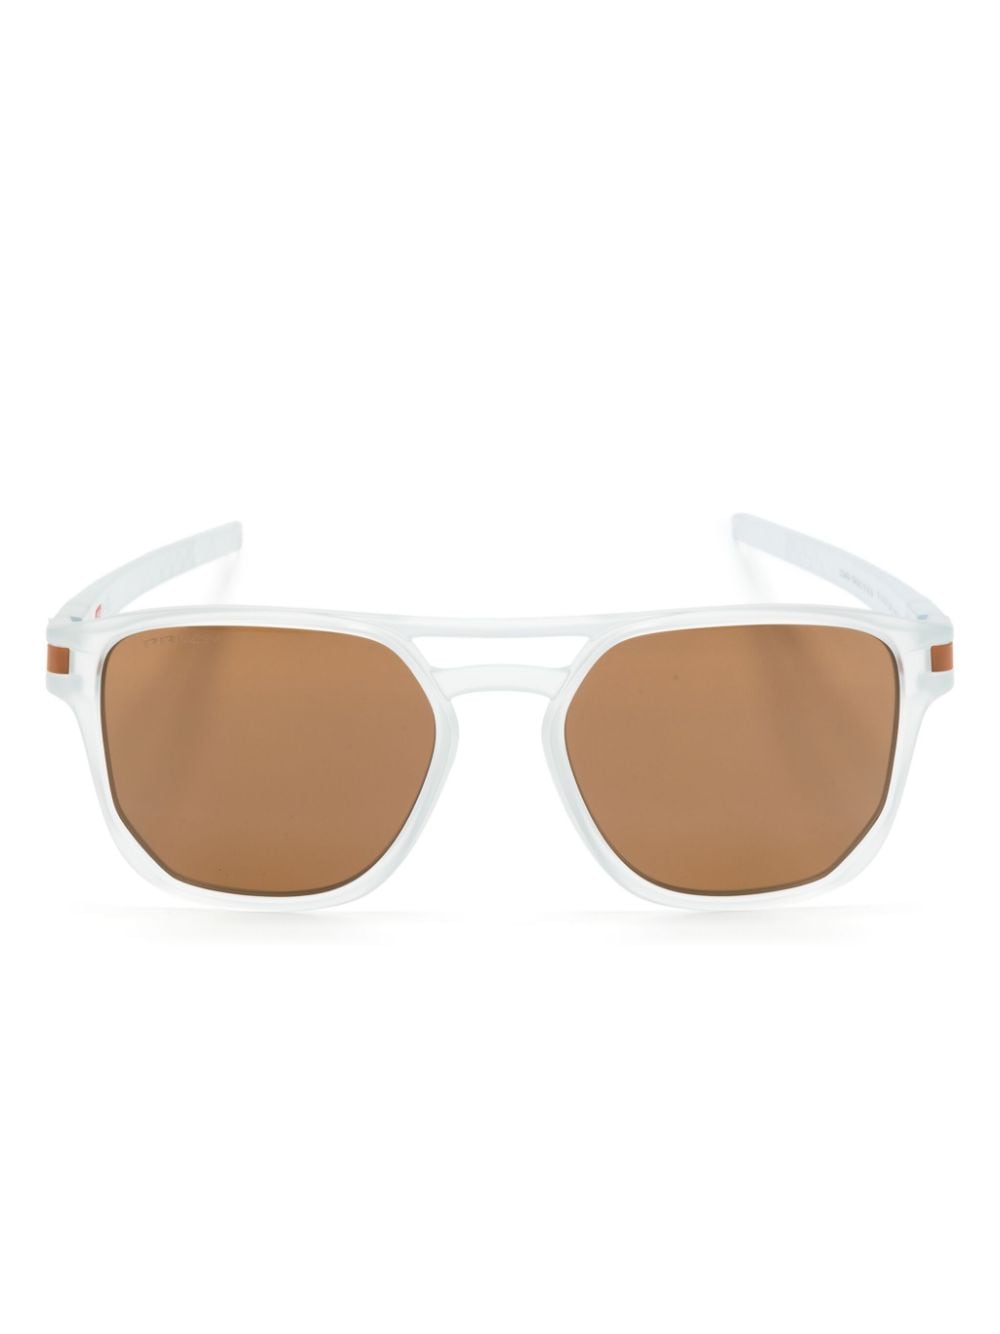 Latch Beta square-frame sunglasses<BR/><BR/>